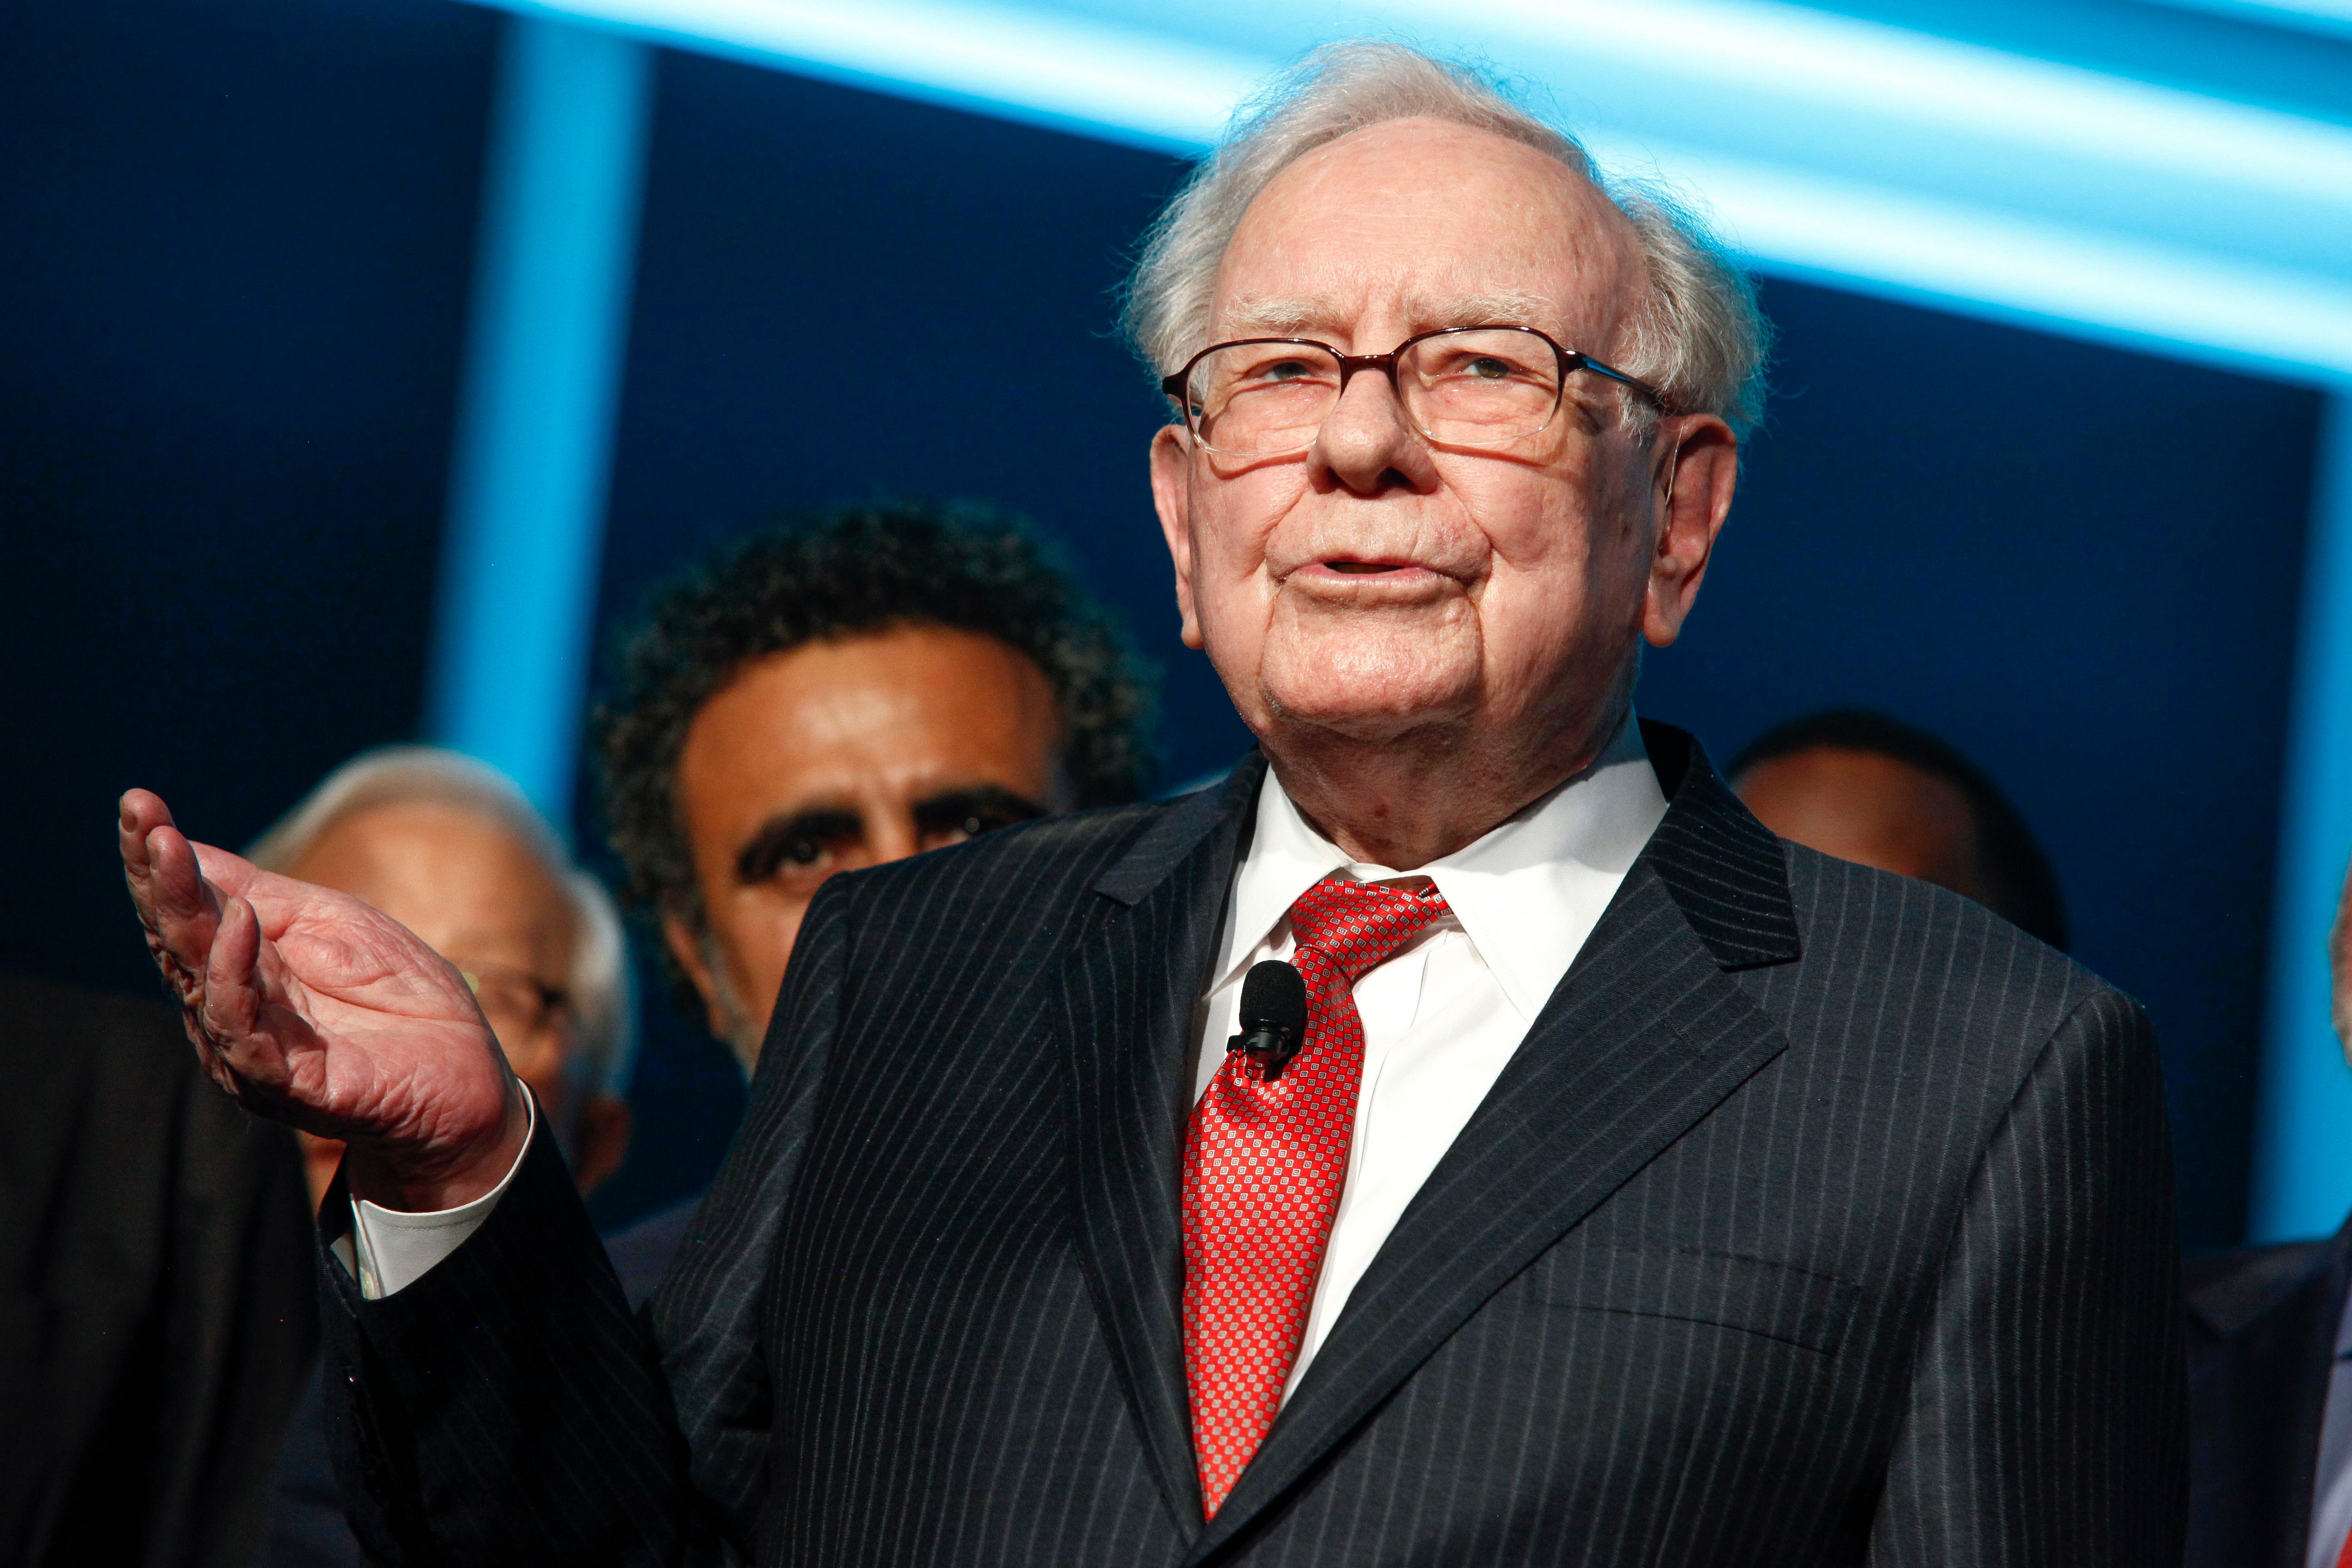 El multimillonario Warren Buffett prevé que habrá más quiebras bancarias en Estados Unidos por 